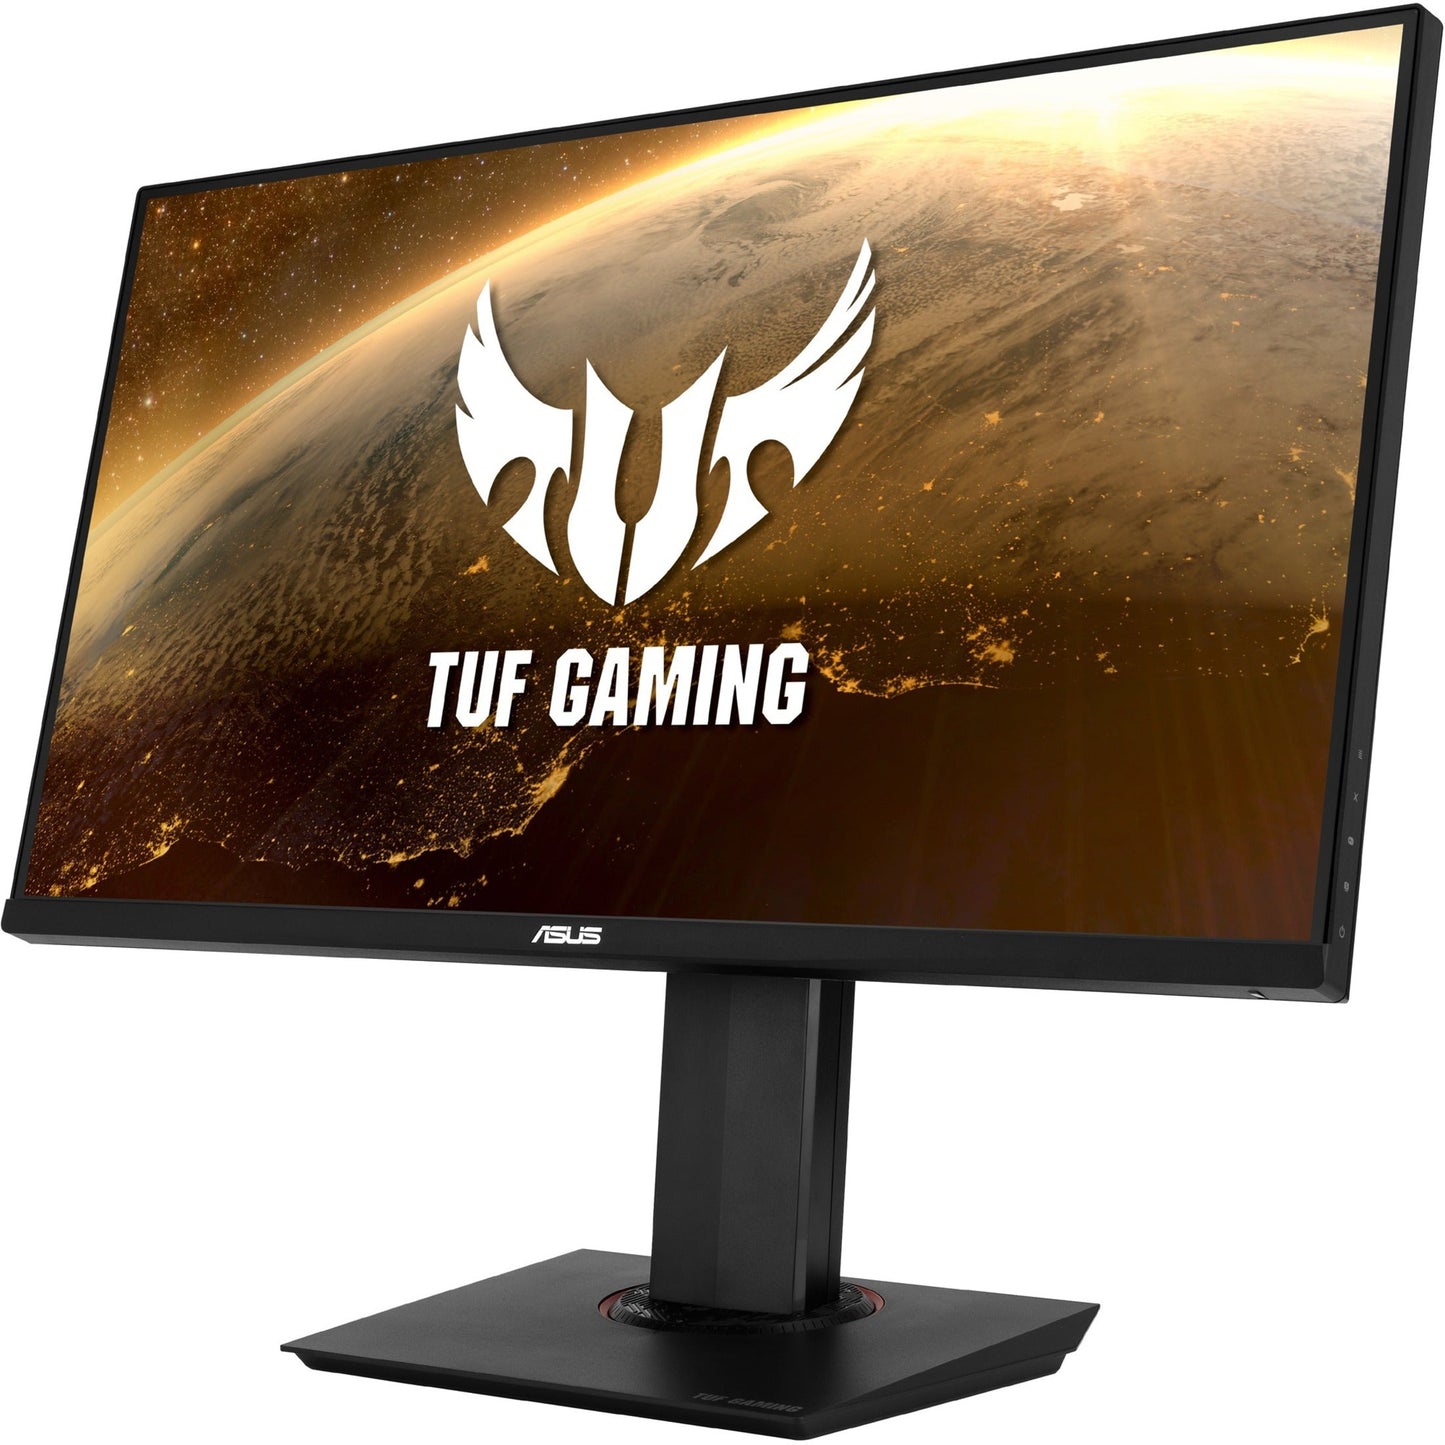 TUF VG289Q 28" 4K UHD Gaming LCD Monitor - 16:9 - Black